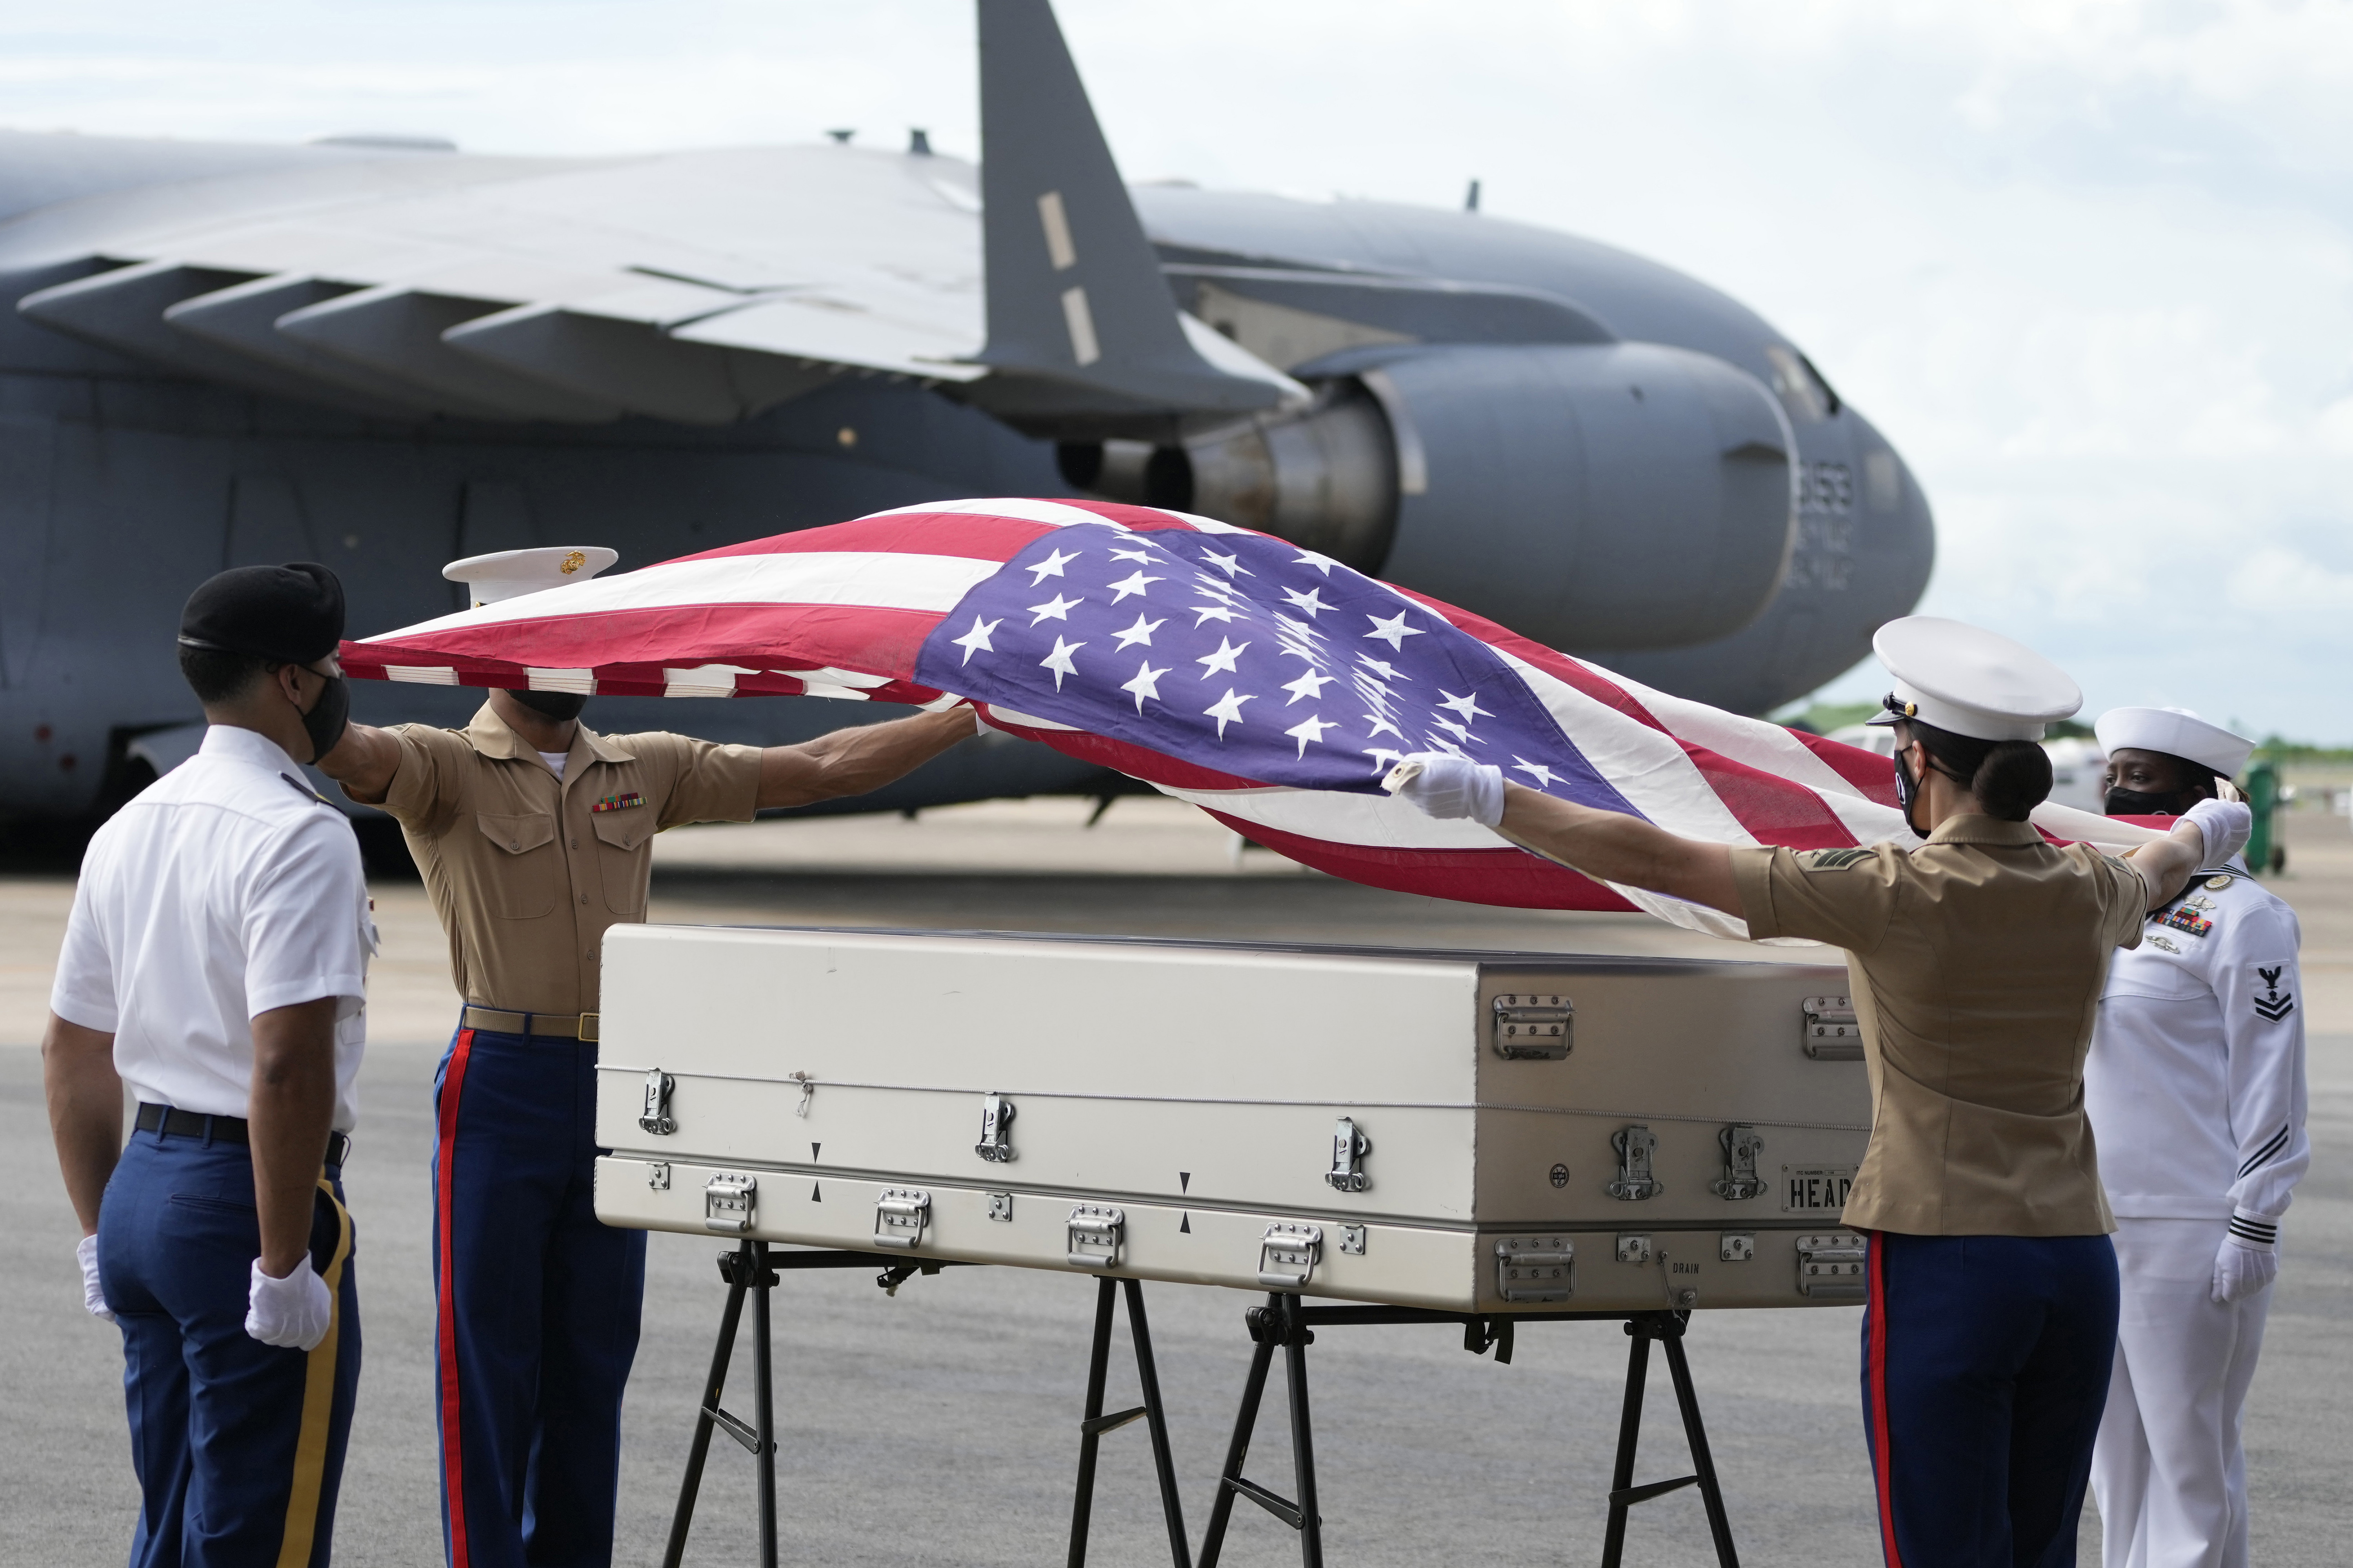 El ejército estadounidense coloca una bandera nacional sobre los posibles restos de un aviador estadounidense de la Segunda Guerra Mundial encontrado en el norte de Tailandia, durante una ceremonia de repatriación el miércoles 18 de mayo de 2022 en la base aérea de U-Tapao en la provincia de Rayong, al este de Tailandia. Los posibles restos humanos fueron encontrados en el lugar del accidente en un campo de arroz en el norte de Tailandia por la Agencia de Contabilidad de POW/MIA de Defensa y fueron enviados a Hawái, donde serán examinados para ver si pertenecen a un piloto estadounidense que desapareció en 1944. (Foto AP/Sakchai Lalit)